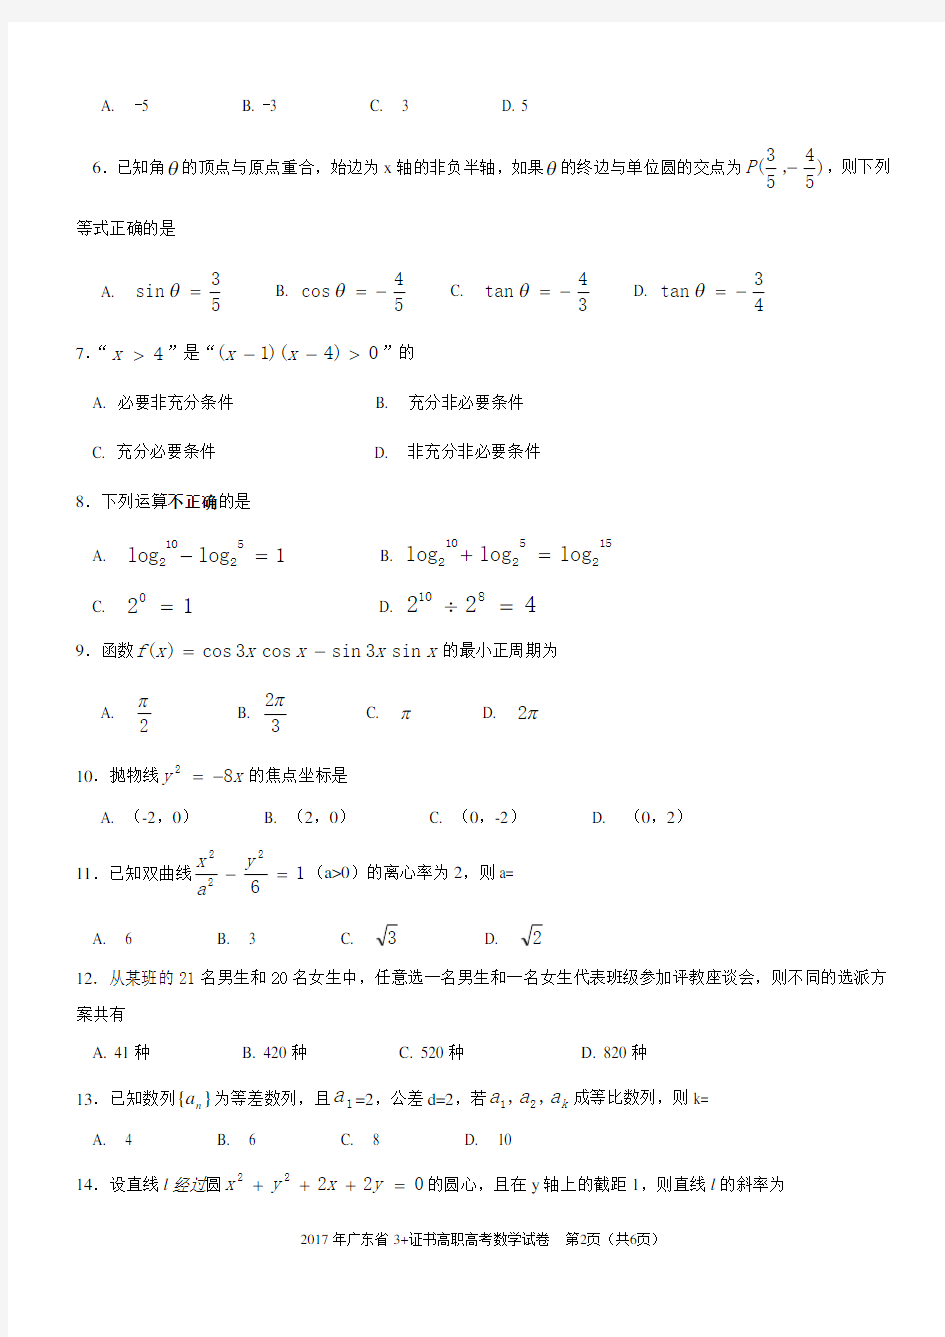 (完整版)数学真题2017年广东省3证书高职高考数学试卷及参考答案